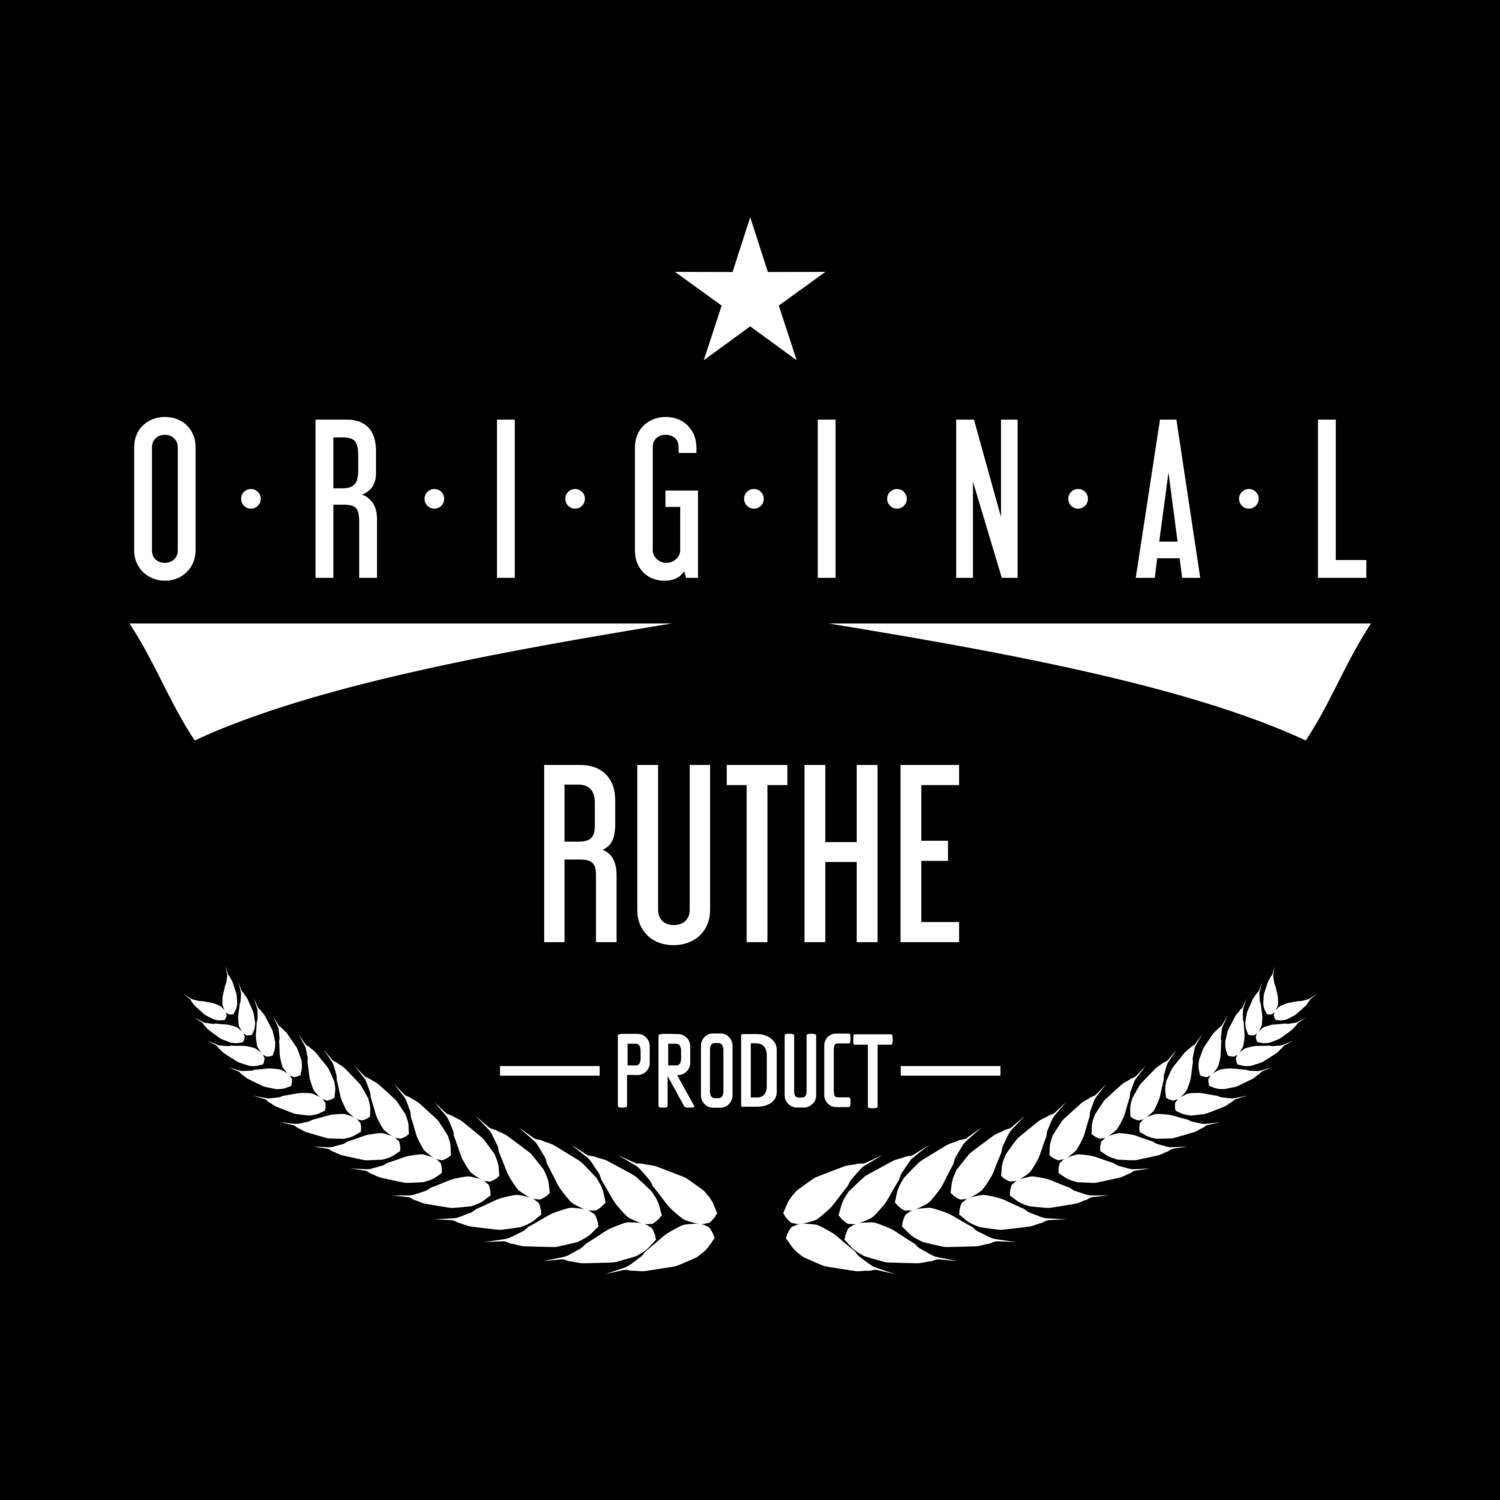 Ruthe T-Shirt »Original Product«